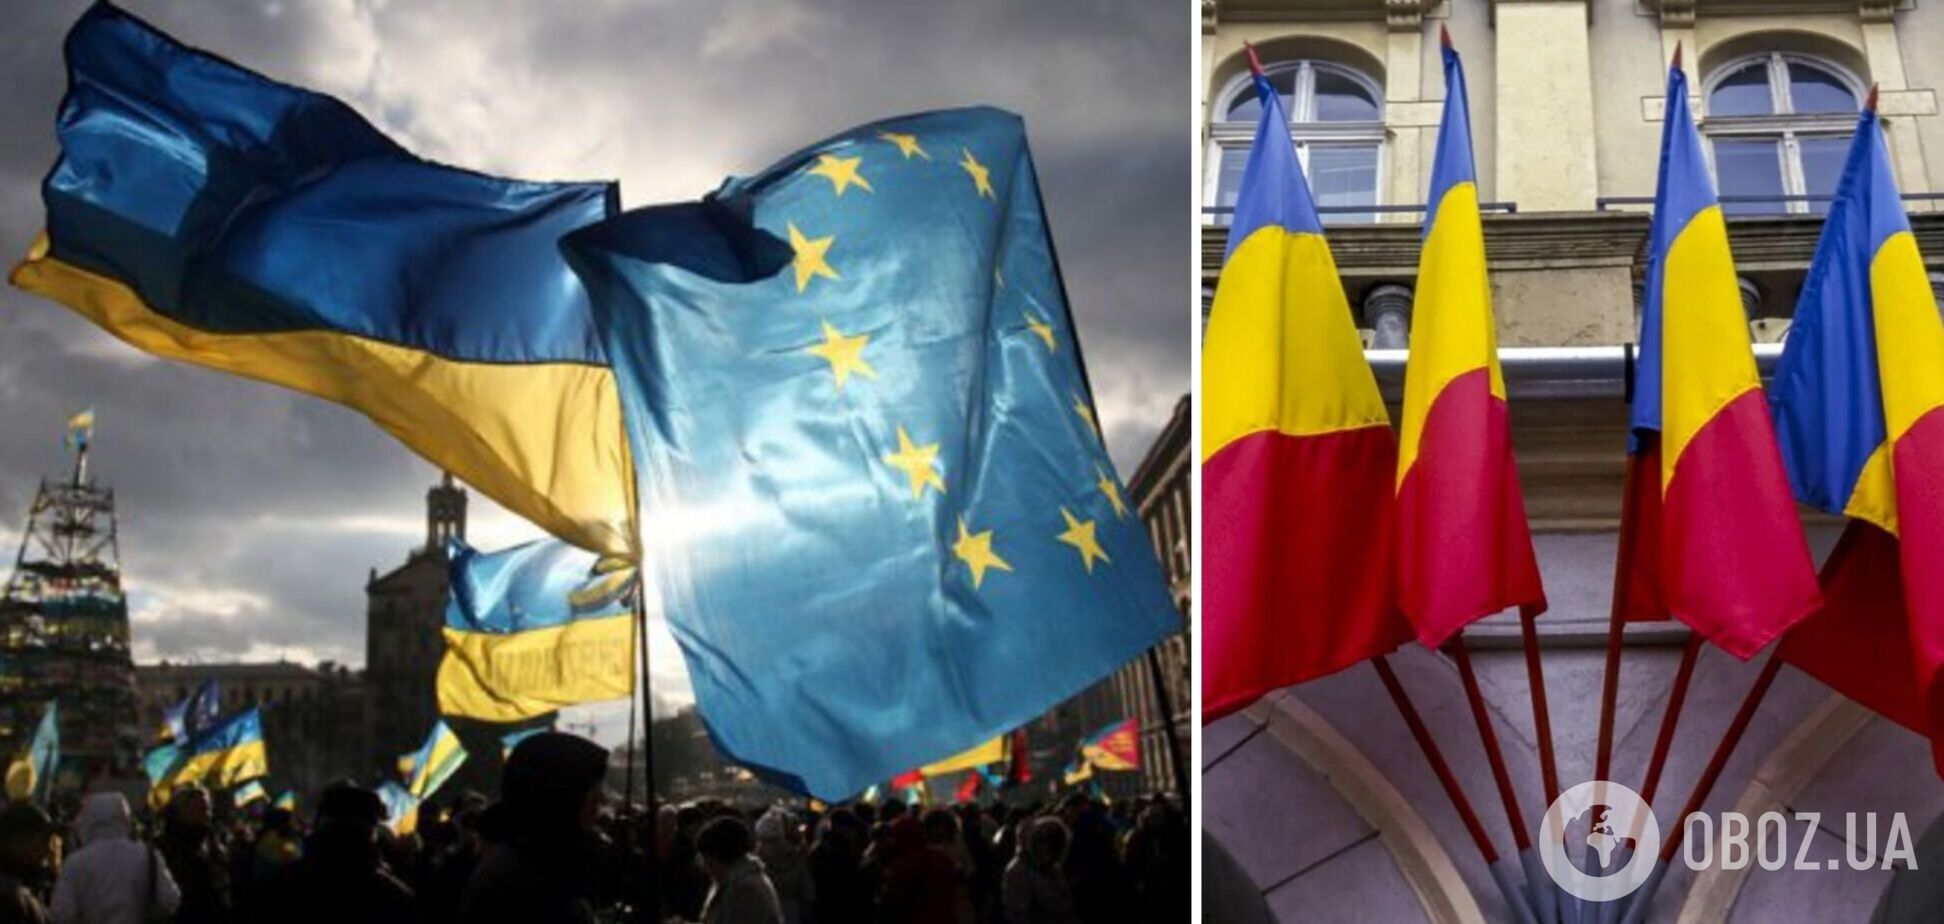 '10 років тому українці віддали свій голос за Європу': Румунія підтримала початок переговорів про вступ України до ЄС